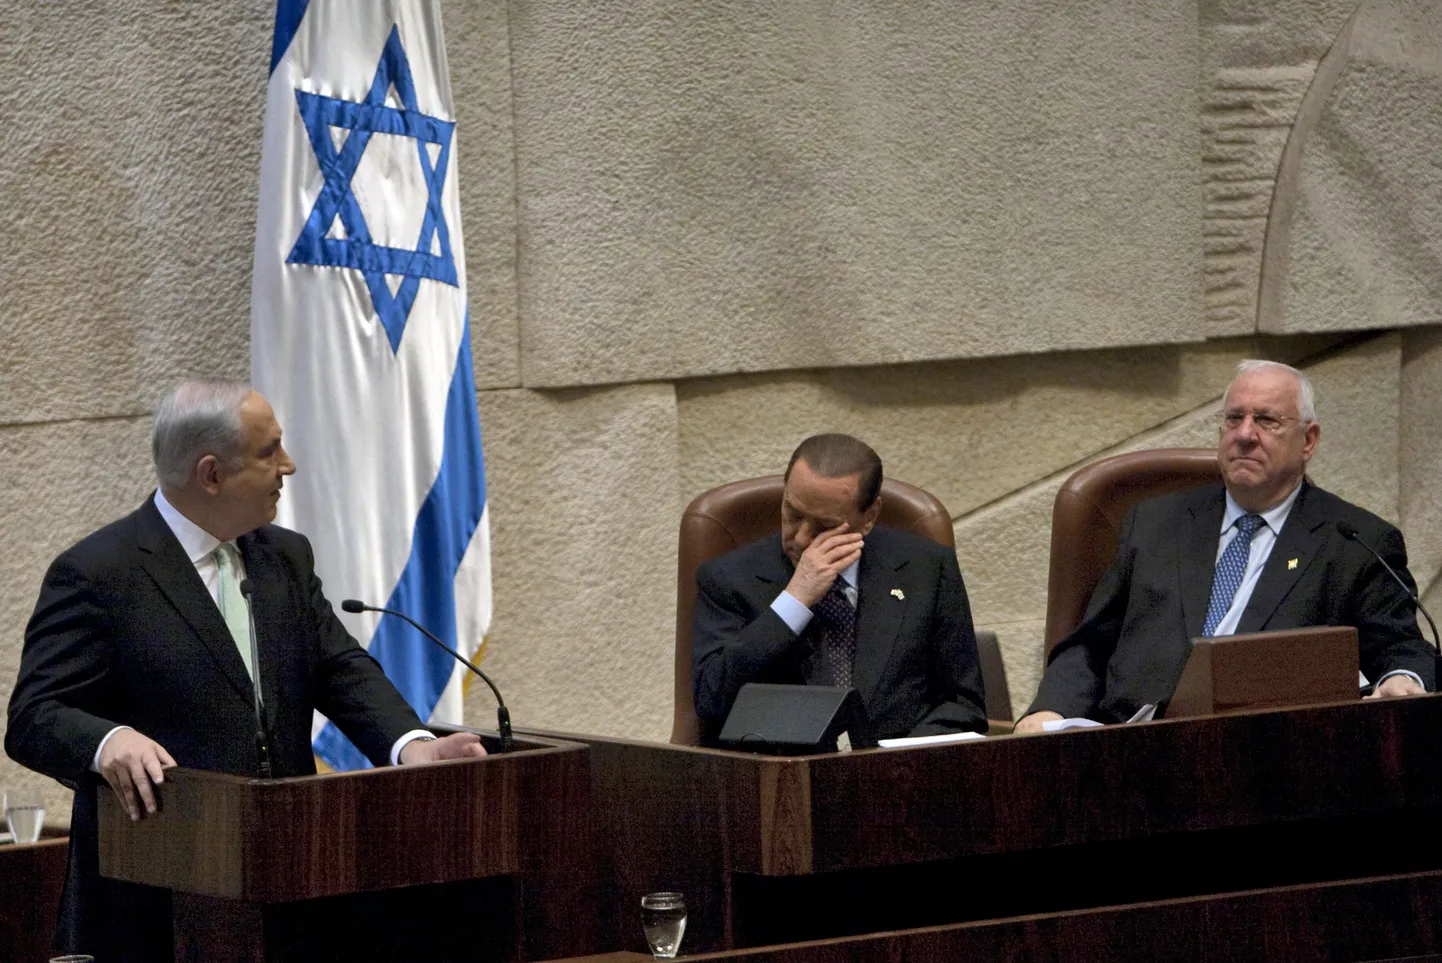 Itaalia peaminister Silvio Berlusconi (keskel) ja Iisraeli peaminister Benjamin Netanyahu (vasakul).